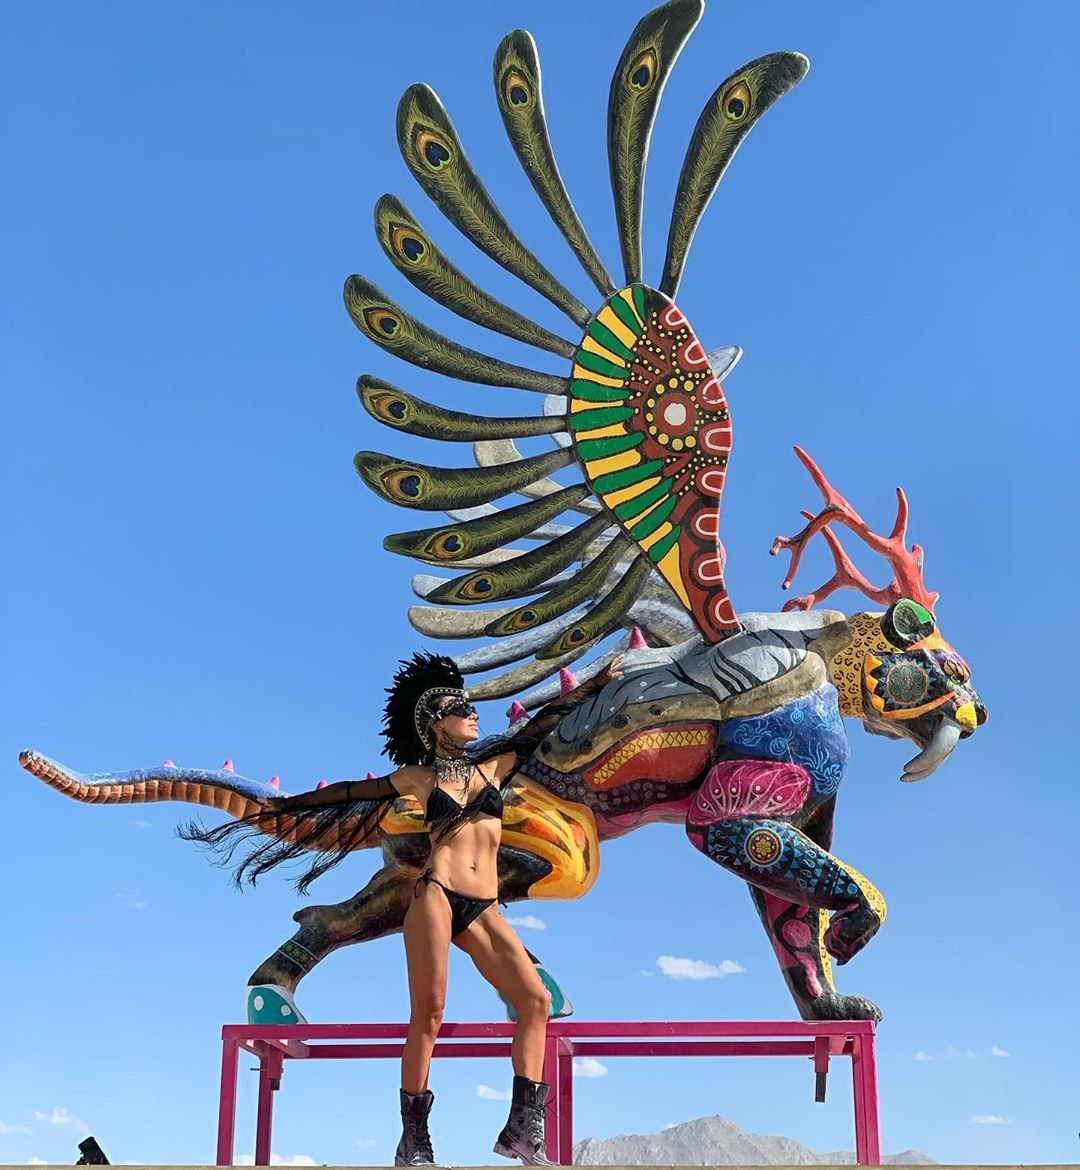 Нереальной красоты скульптуры и голые тела на фестивале Burning Man 2019 - фото 448426